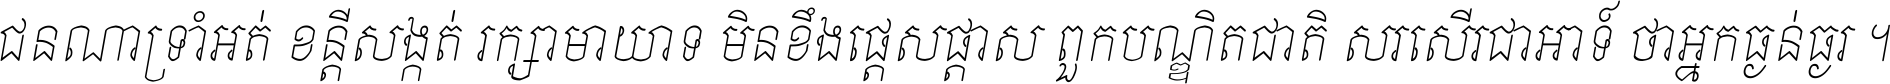 Kh Baphnom Small Style Italic